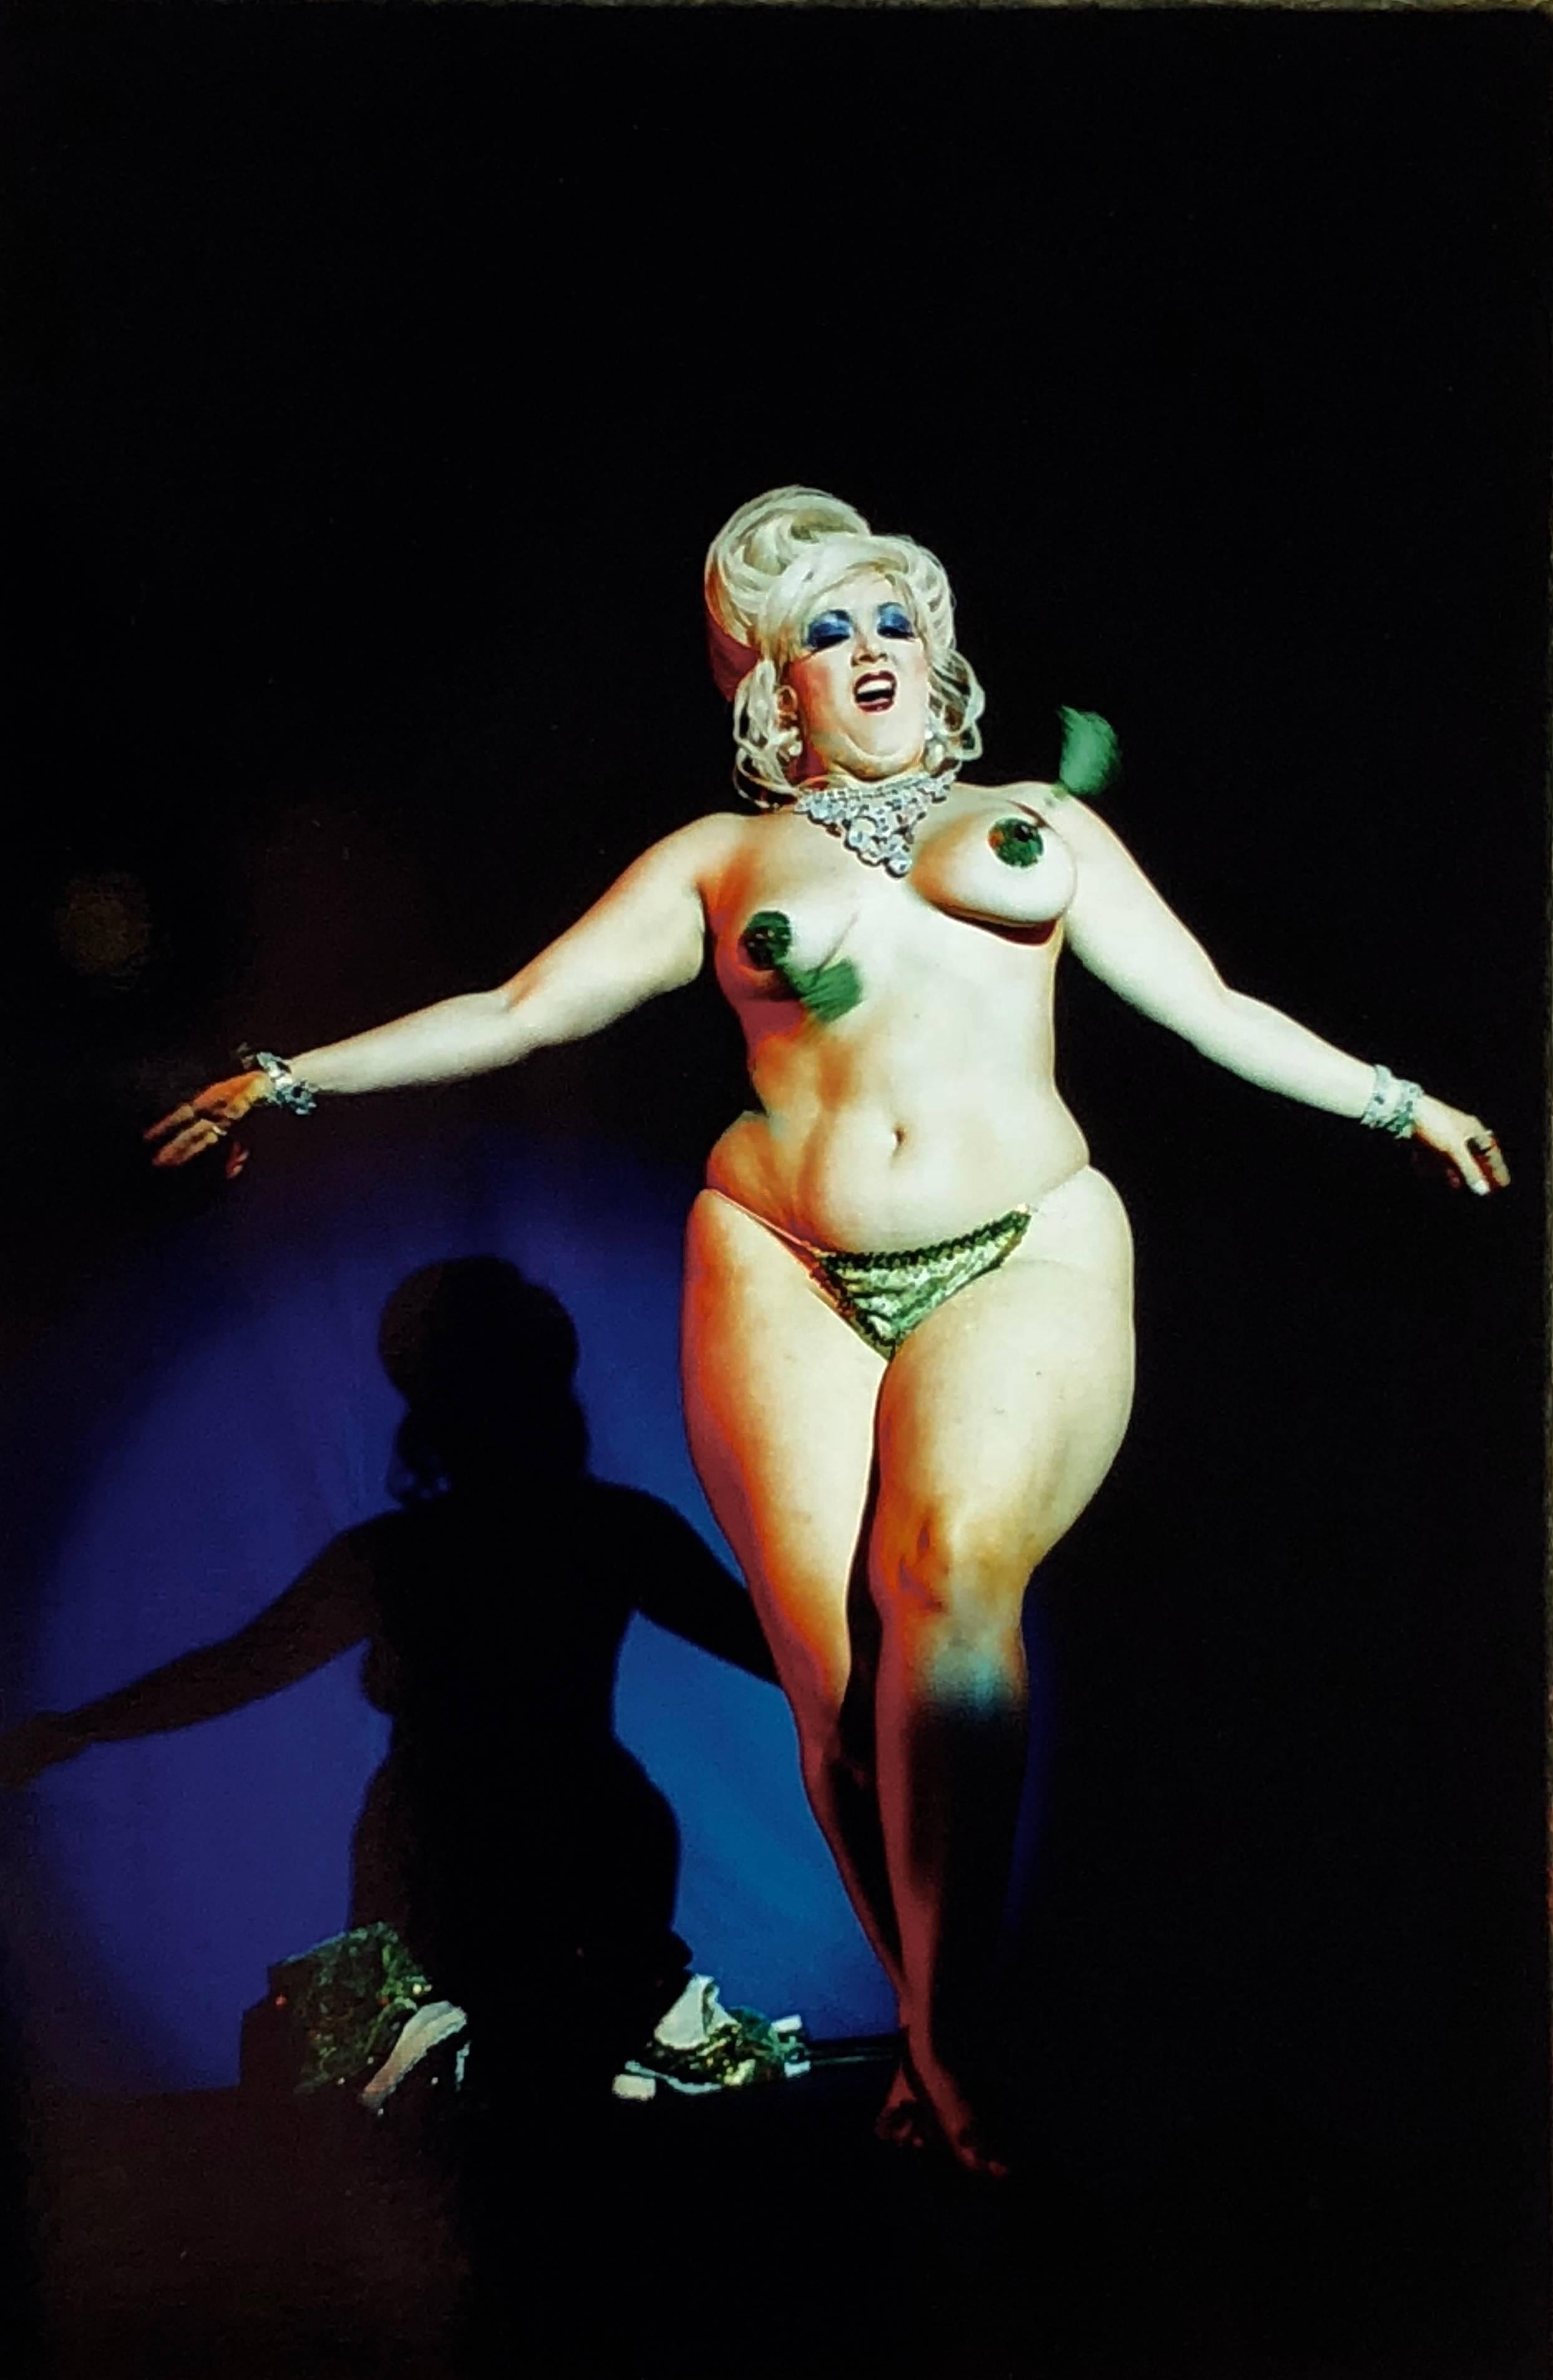 Color Photograph Richard Heeps - Série Burlesque, danse à l'éventail de Martini Fan XXII, Tease-O-Rama, Hollywood, Los Angeles